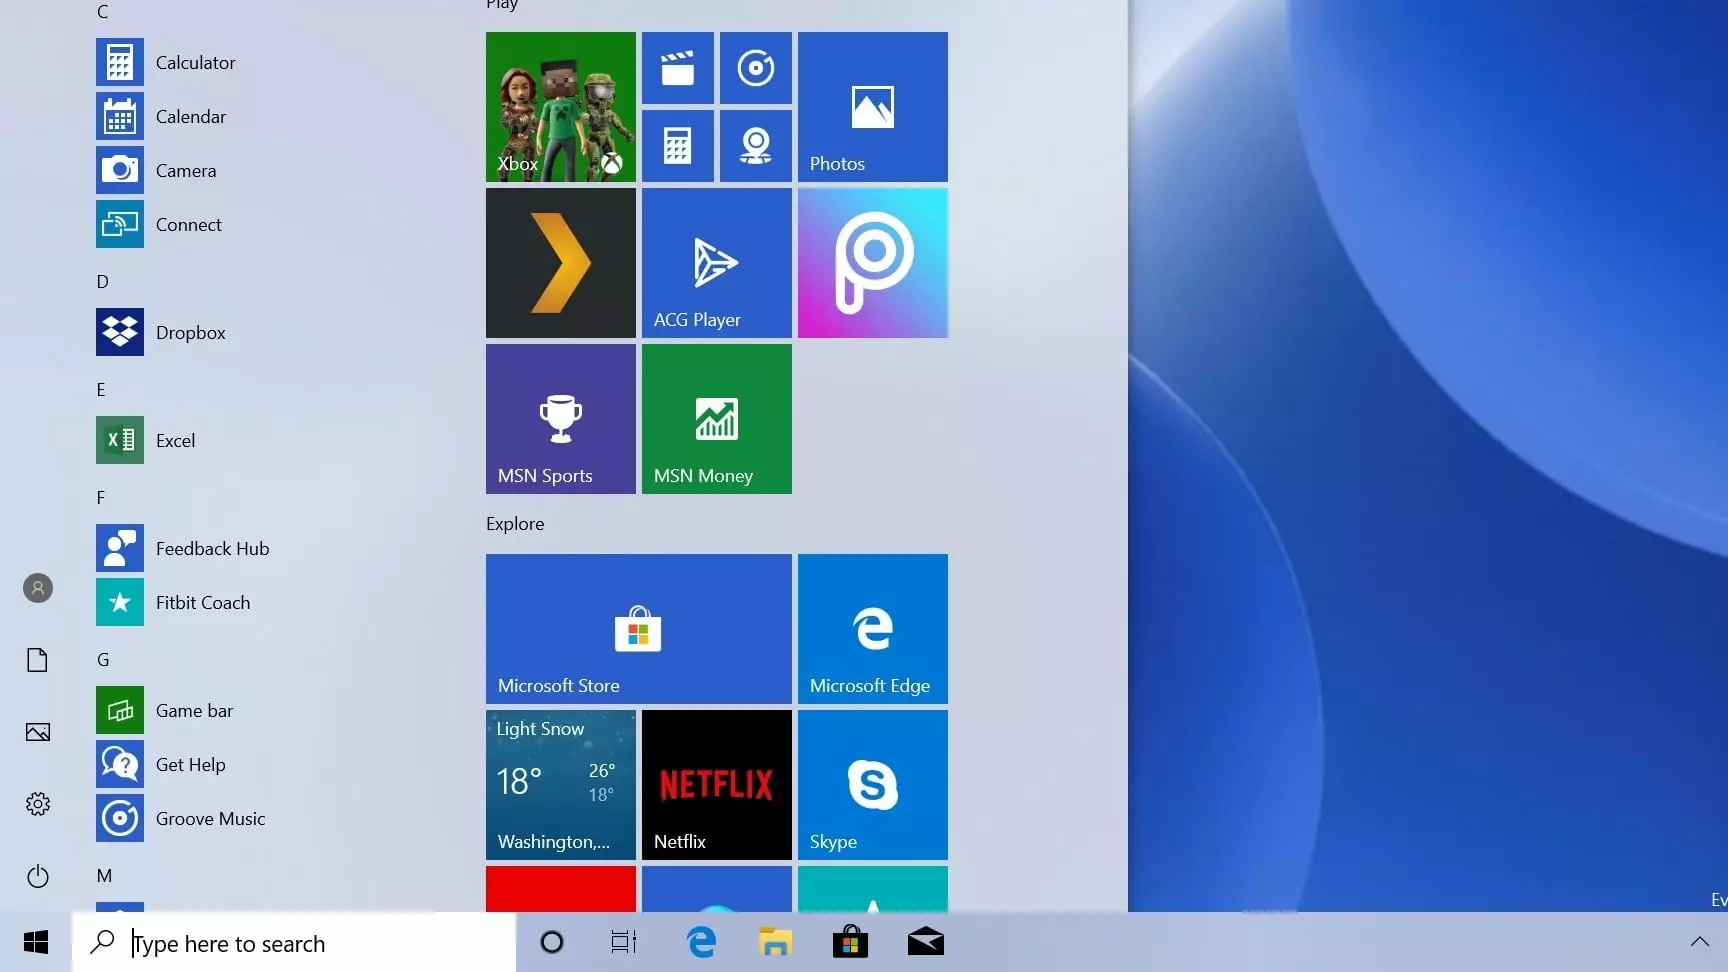 Легковесное меню "Пуск" в Windows 10 19H1